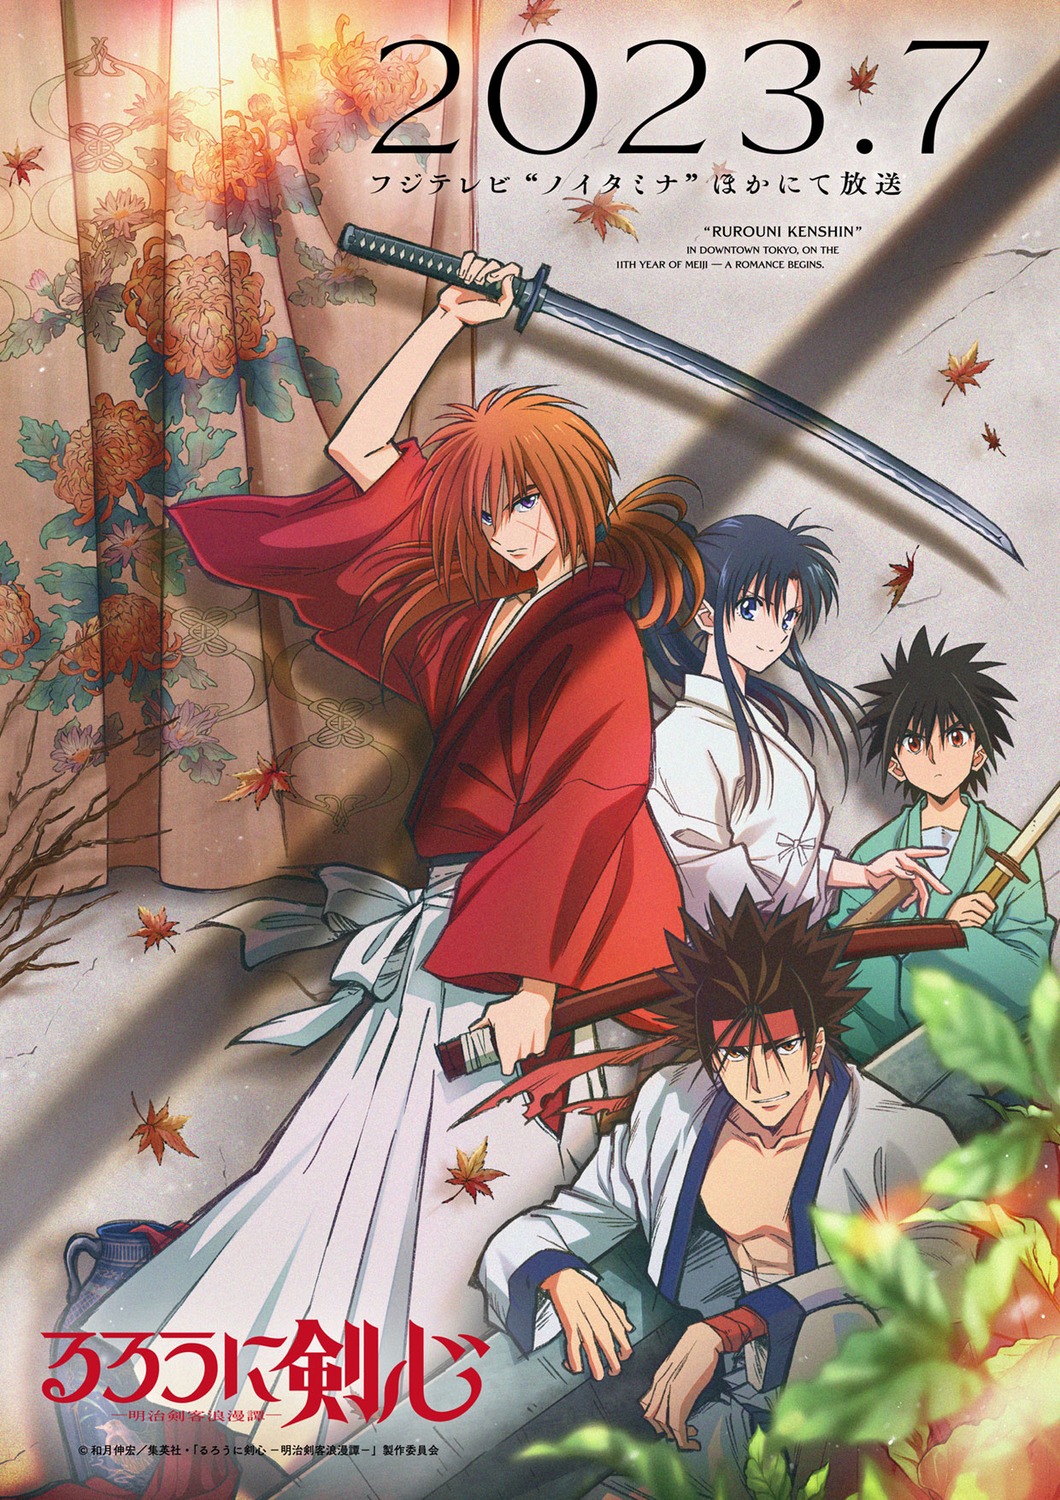 Rurouni Kenshin Himura Kenshin Kamiya Kaoru Myoujin Yahiko Sagara Sanosuke Bandages Japanese 